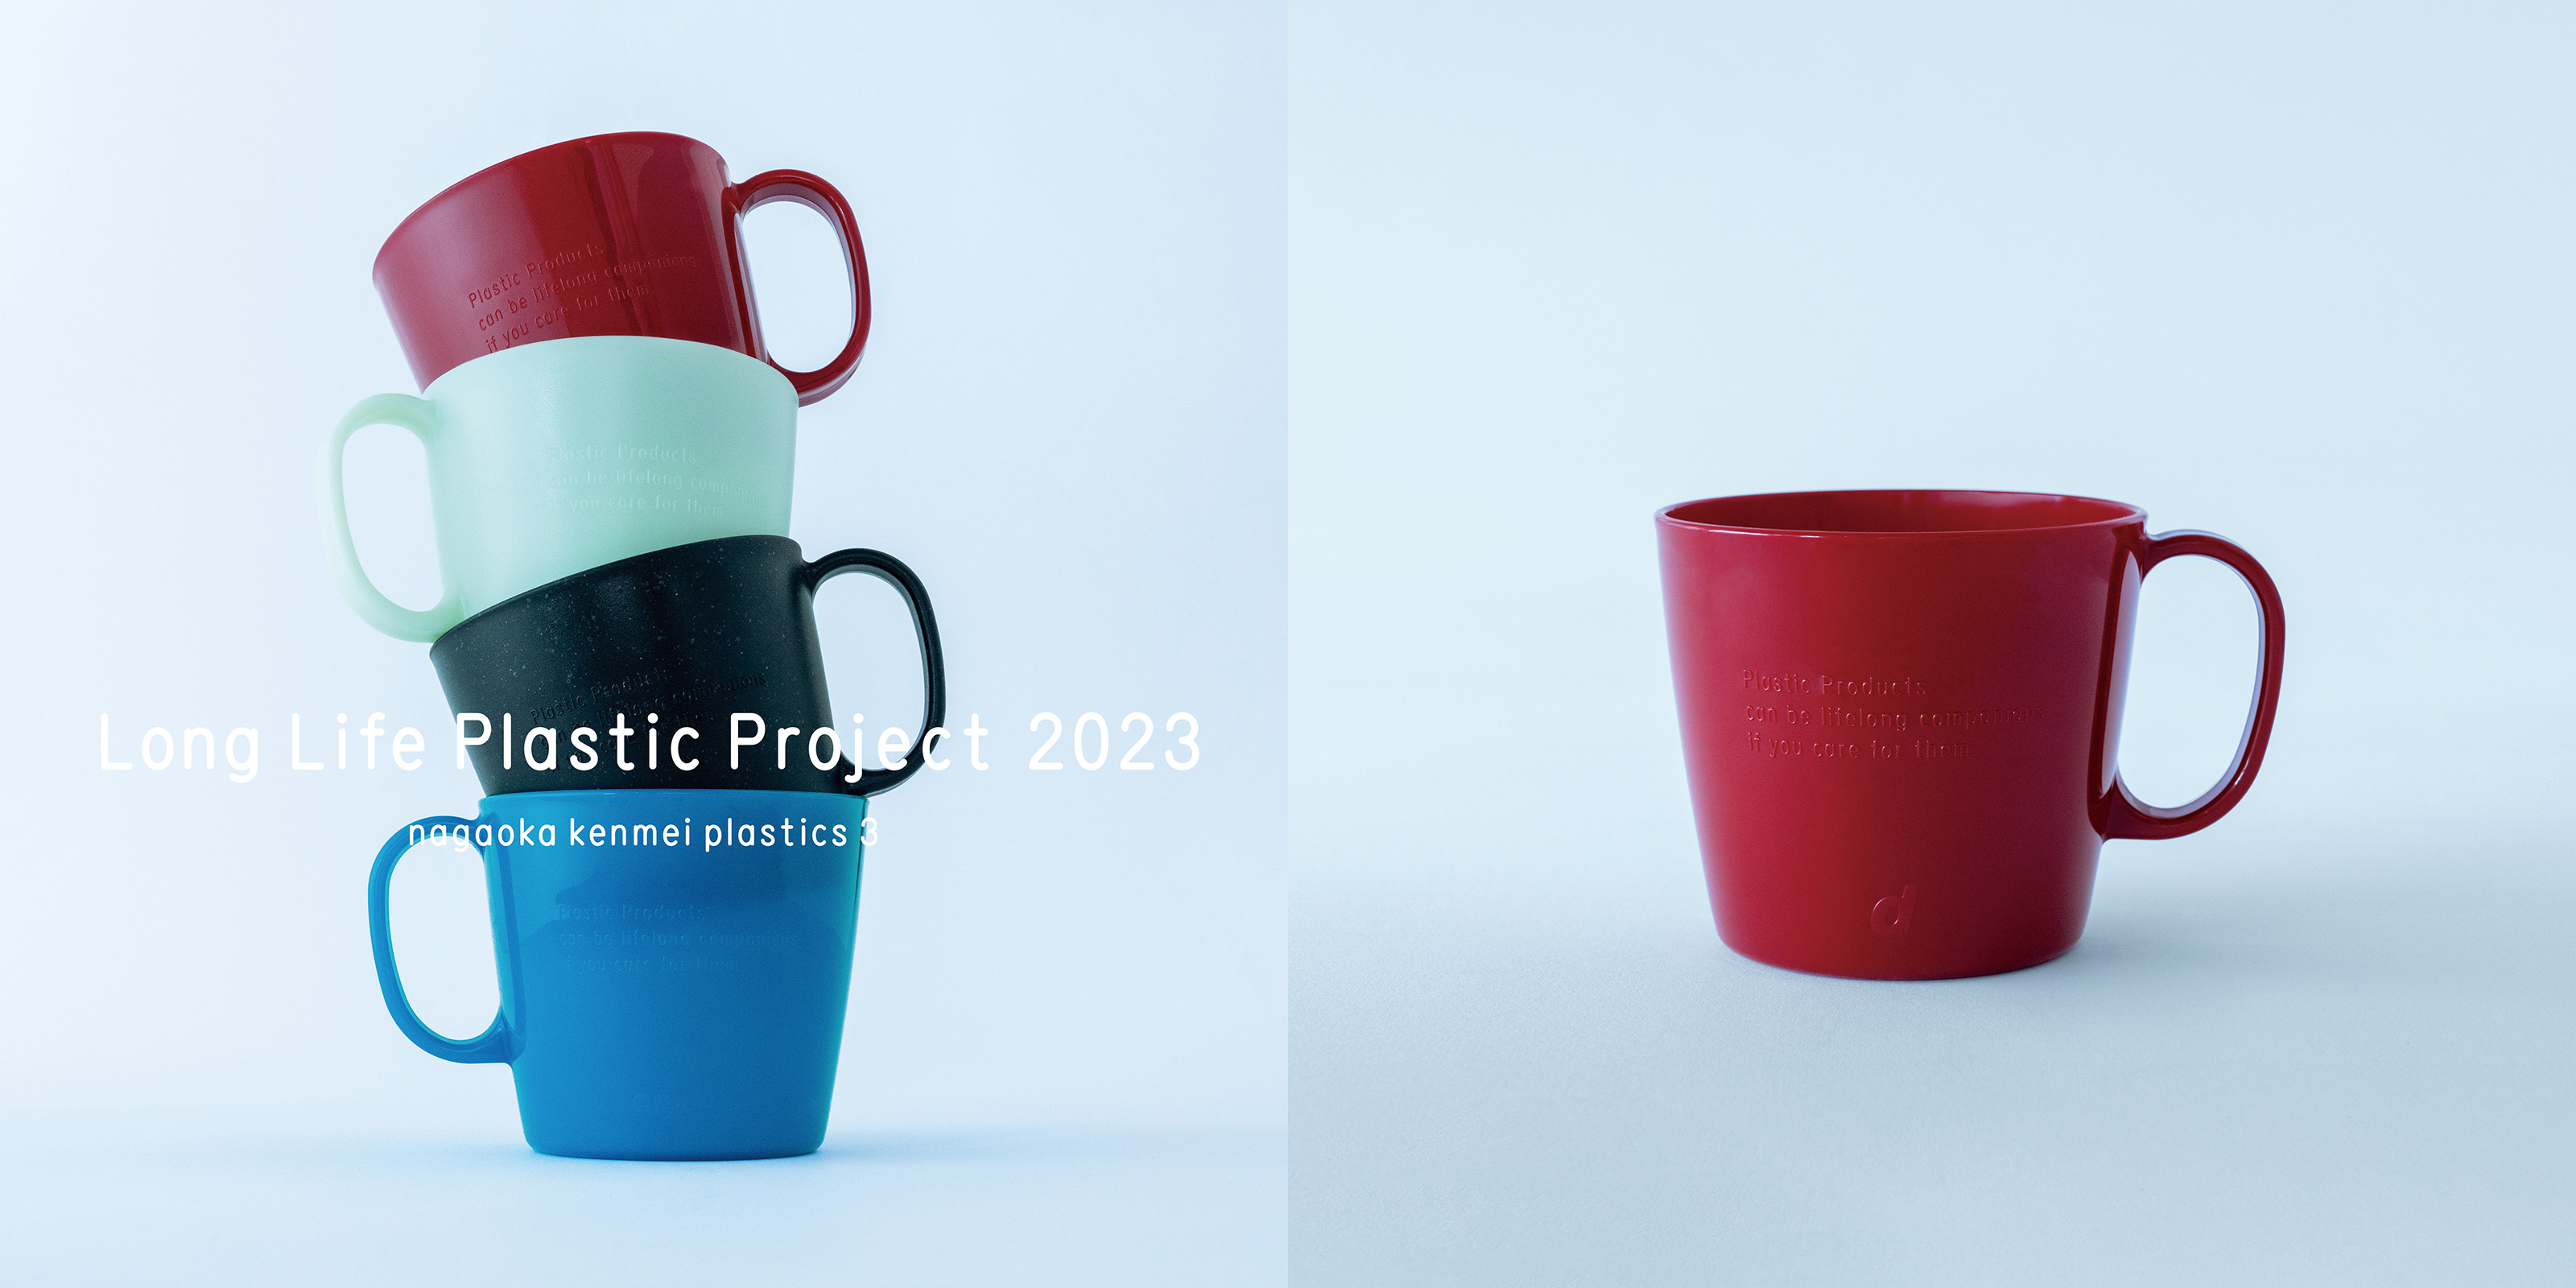 Long Life Plastic Project 2023 プラスチックマグカップ・レビューレッド